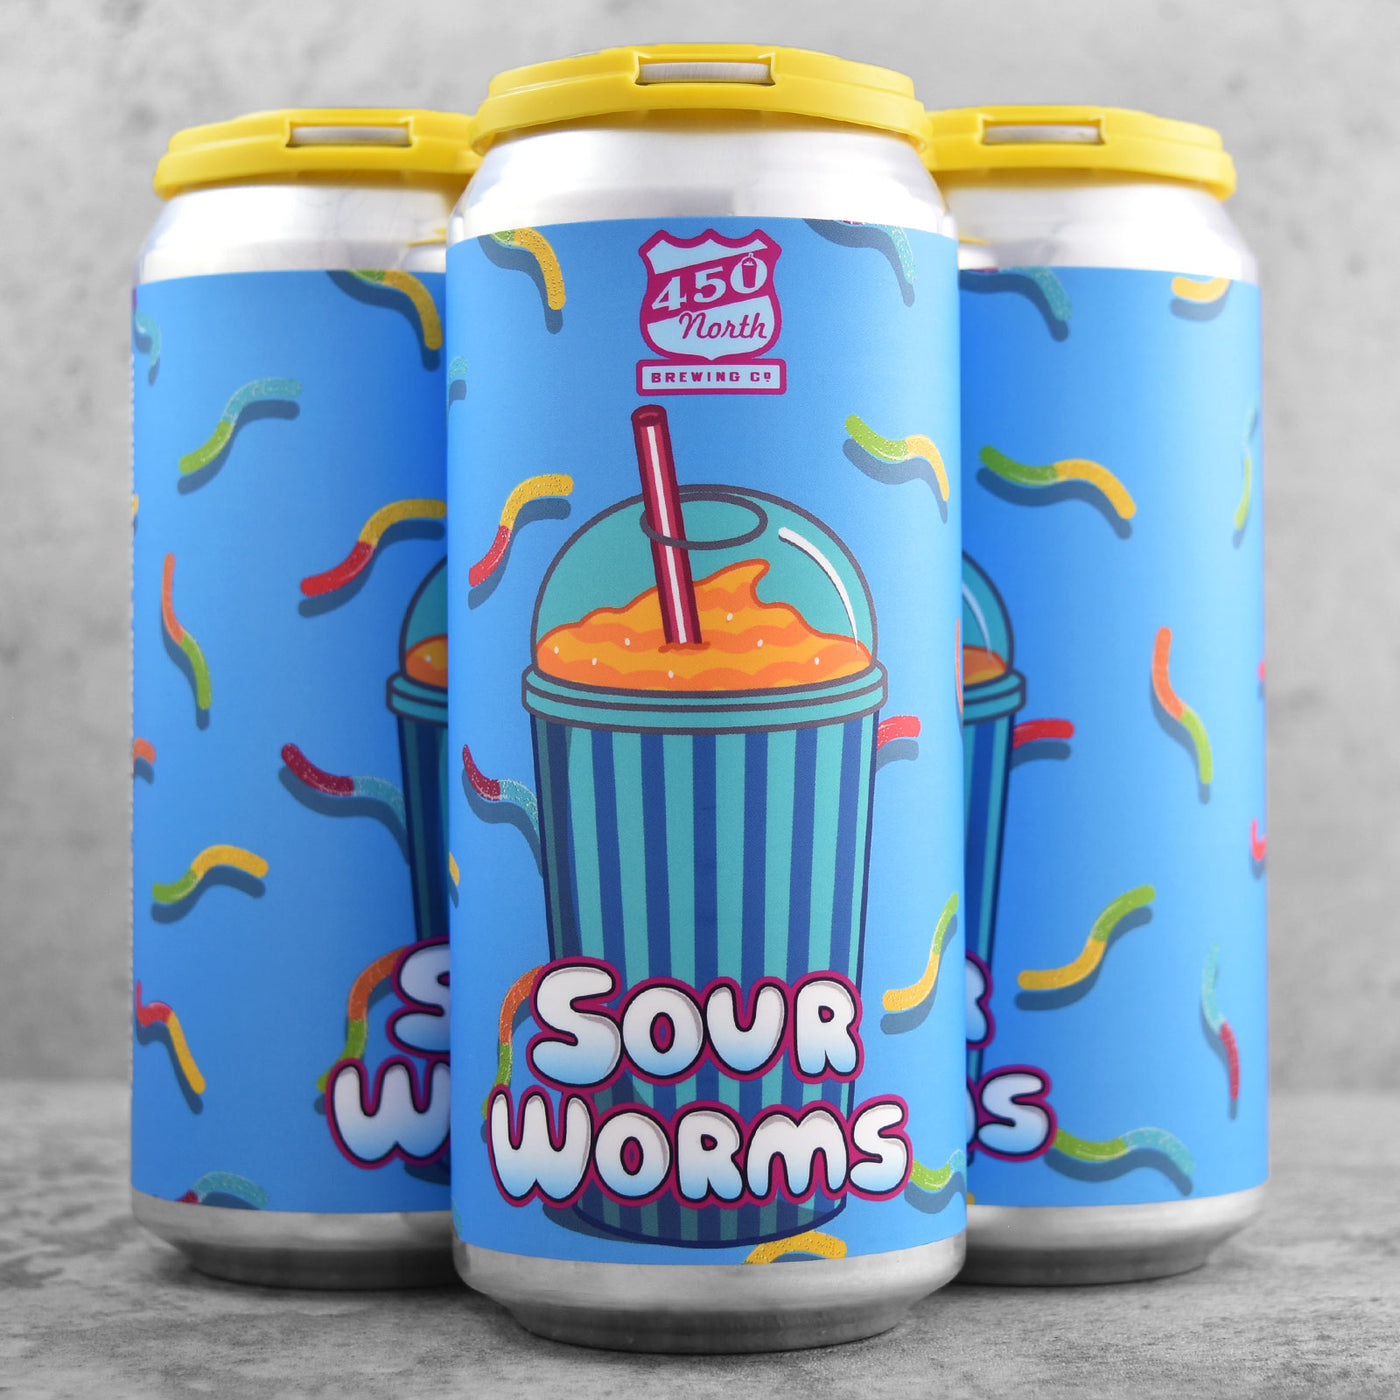 450 North Sour Worms Slushy XL